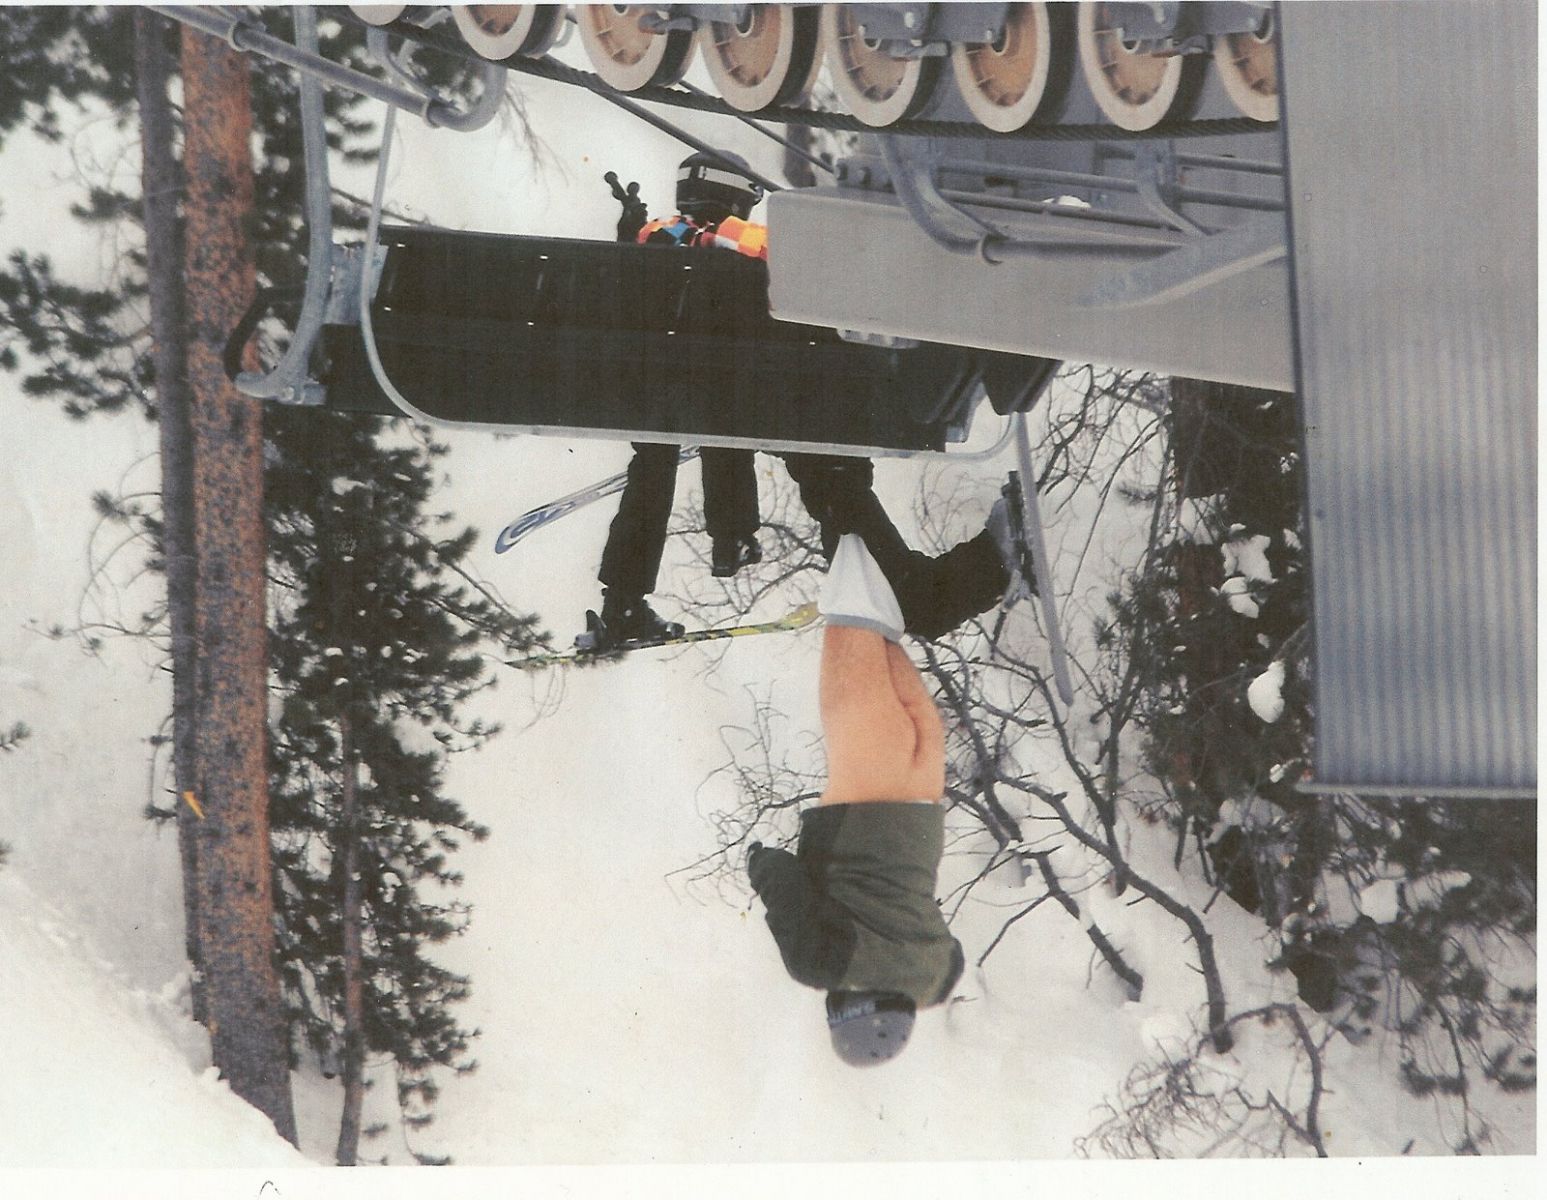 Ski Chairlift Fail, Guy falls off naked